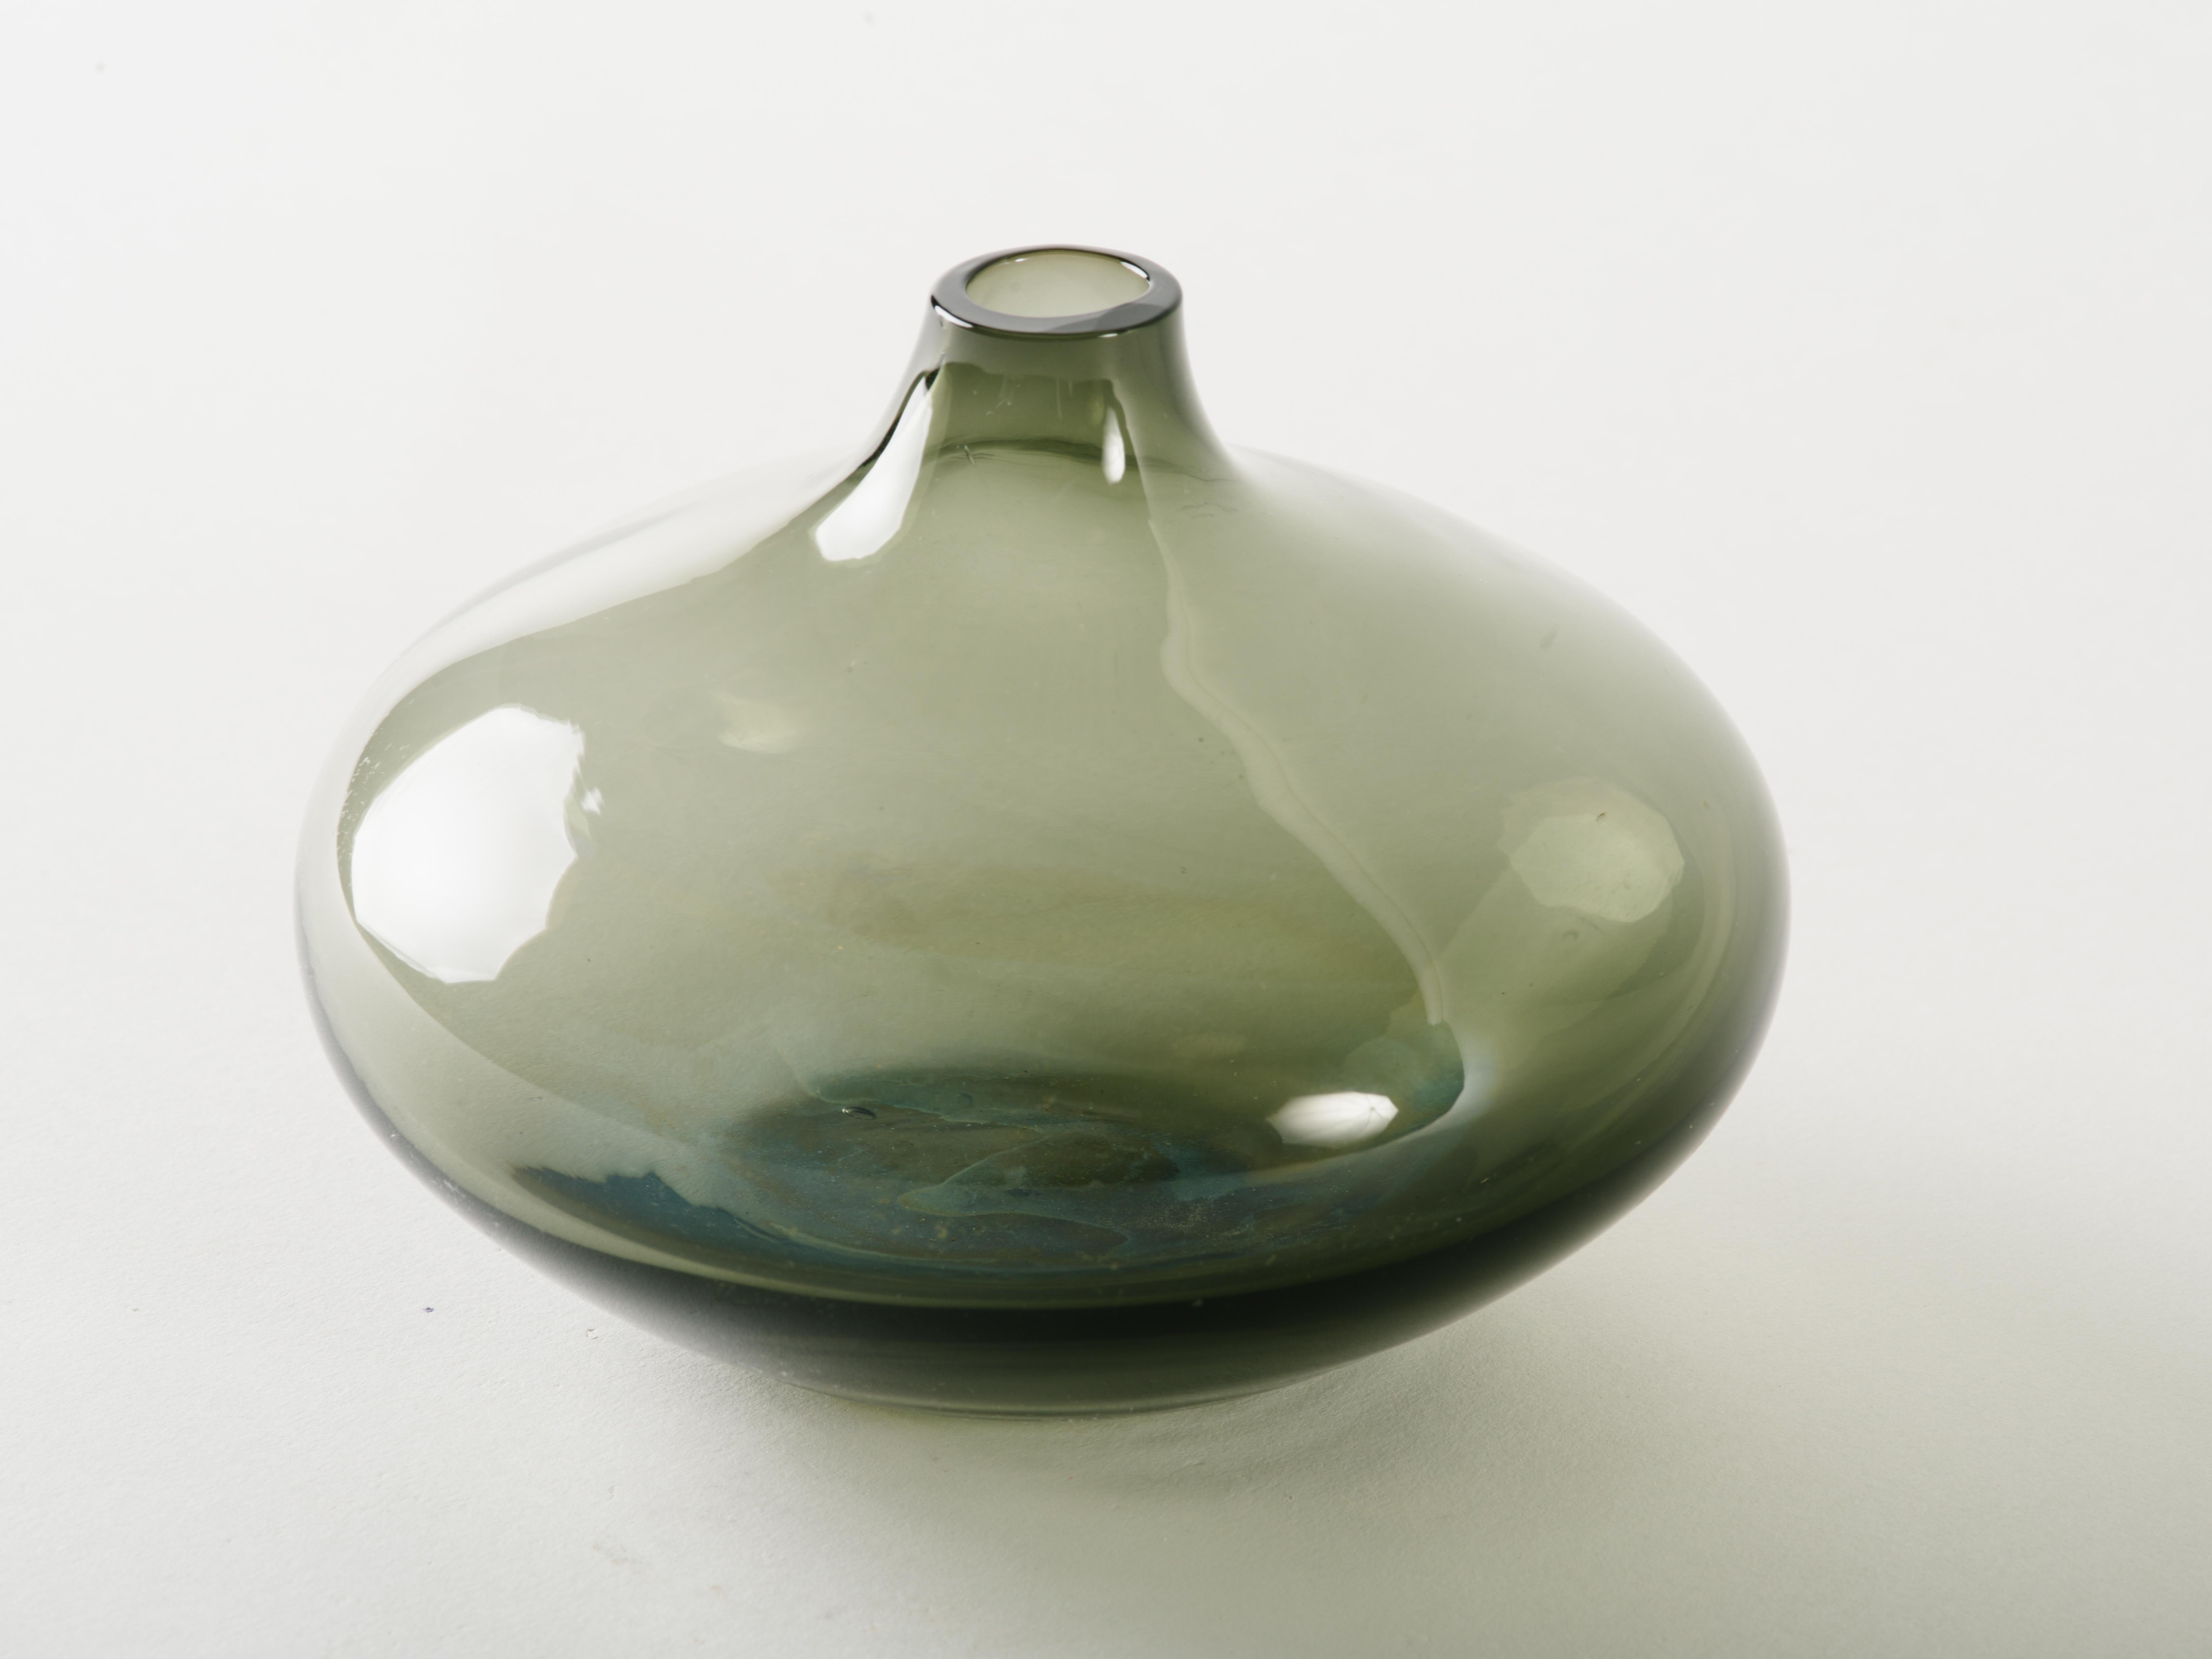 Vase aus mundgeblasenem Glas aus der Jahrhundertmitte in rauchgrauem oder durchscheinendem schwarzem Farbton. Die Knospenvase hat eine elegante Tropfenform, die an einen kleinen Flaschengeist erinnert. Die kleine Gefäßöffnung ist perfekt für